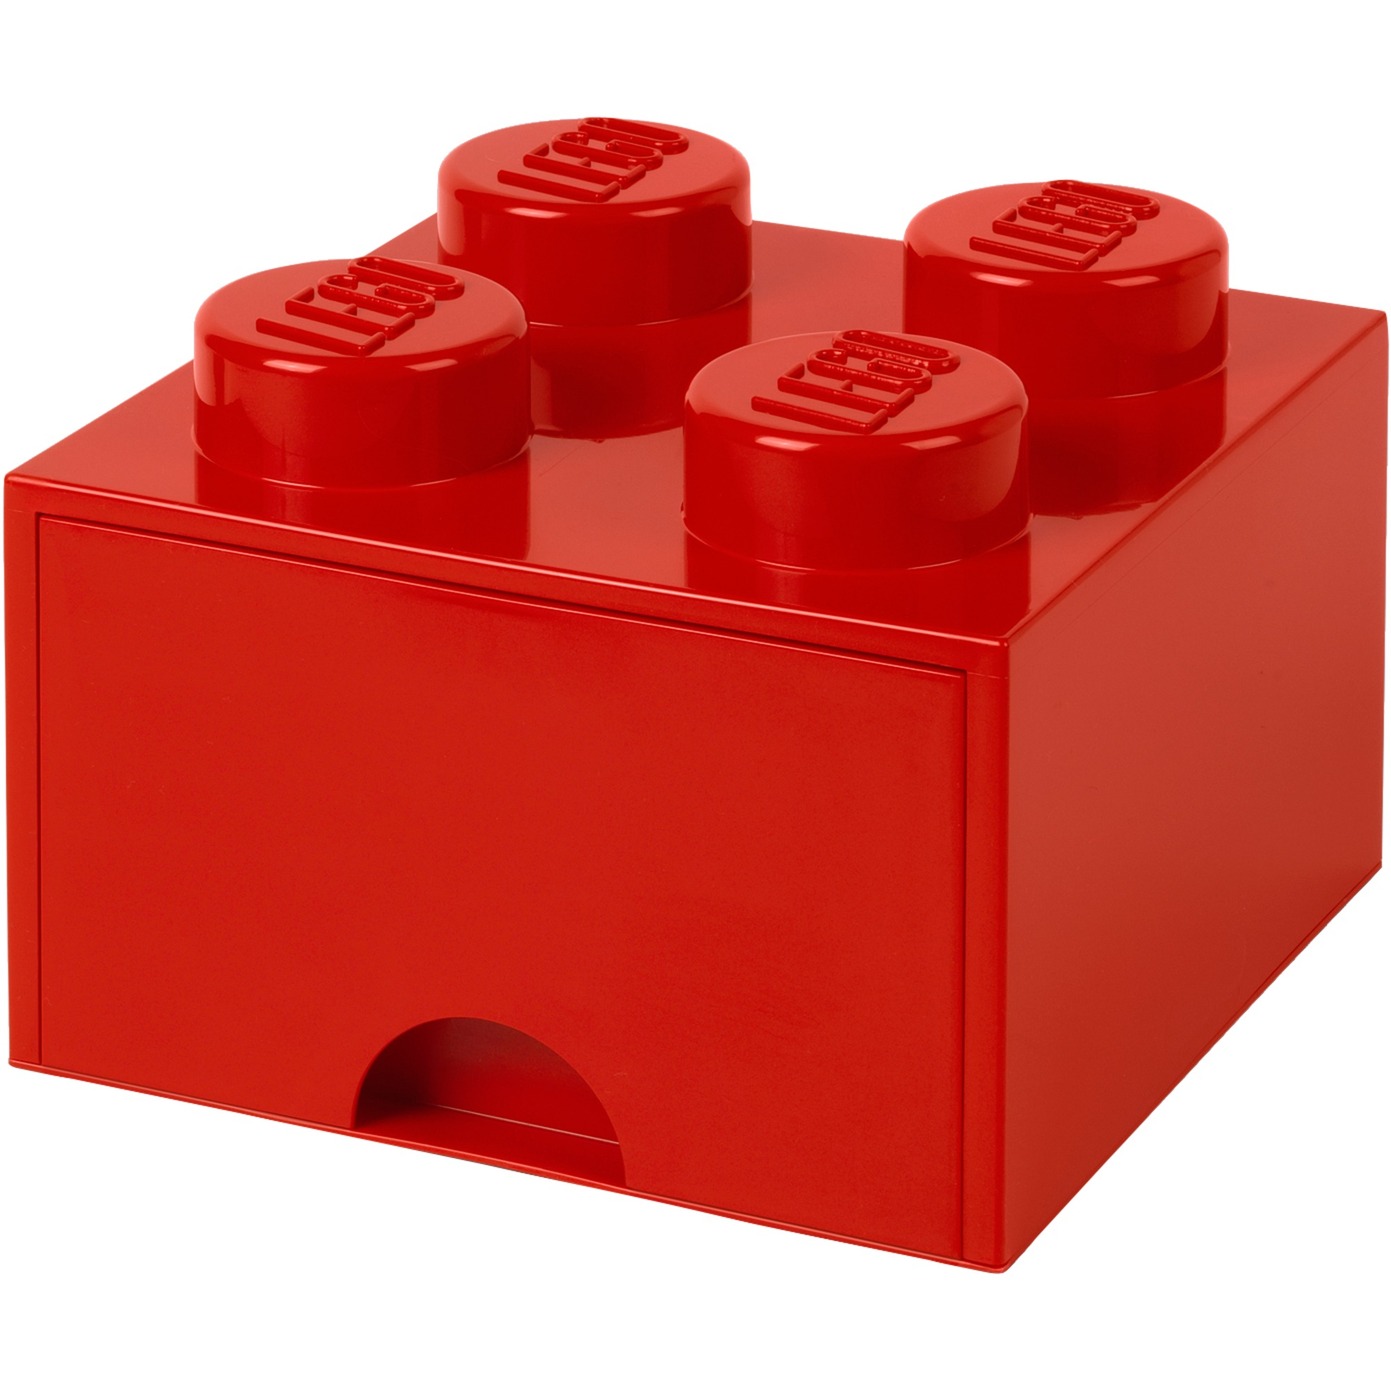 Image of Alternate - LEGO Brick Drawer 4 rot, Aufbewahrungsbox online einkaufen bei Alternate